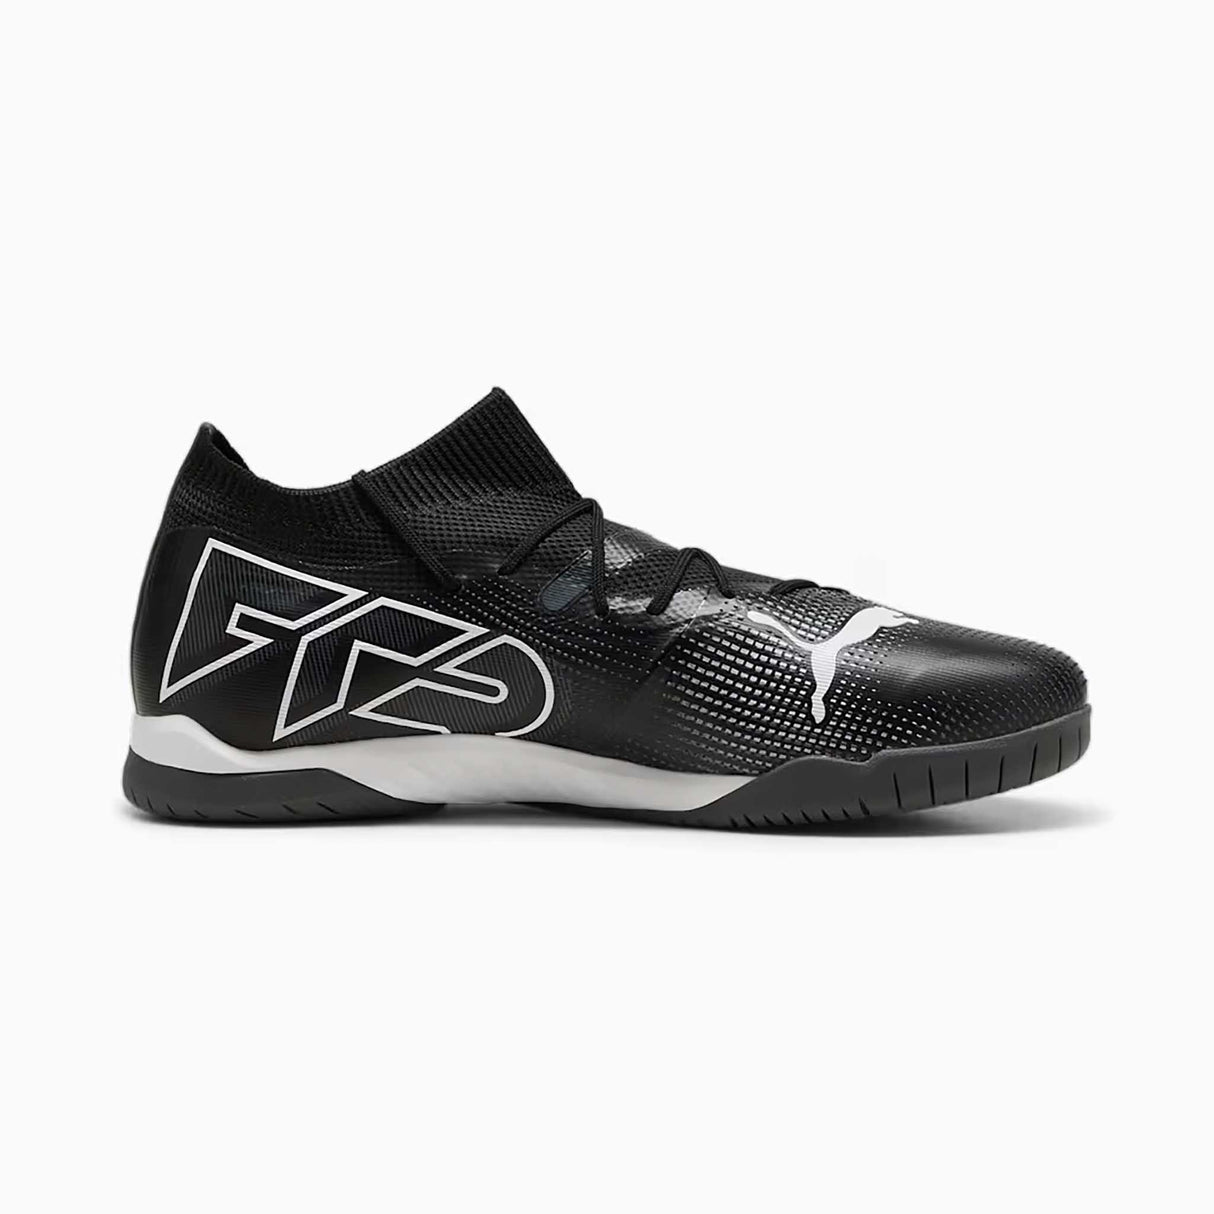 Puma Future 7 Match IT Futsal chaussures de soccer intérieur adulte vue latérale - Noir / Blanc